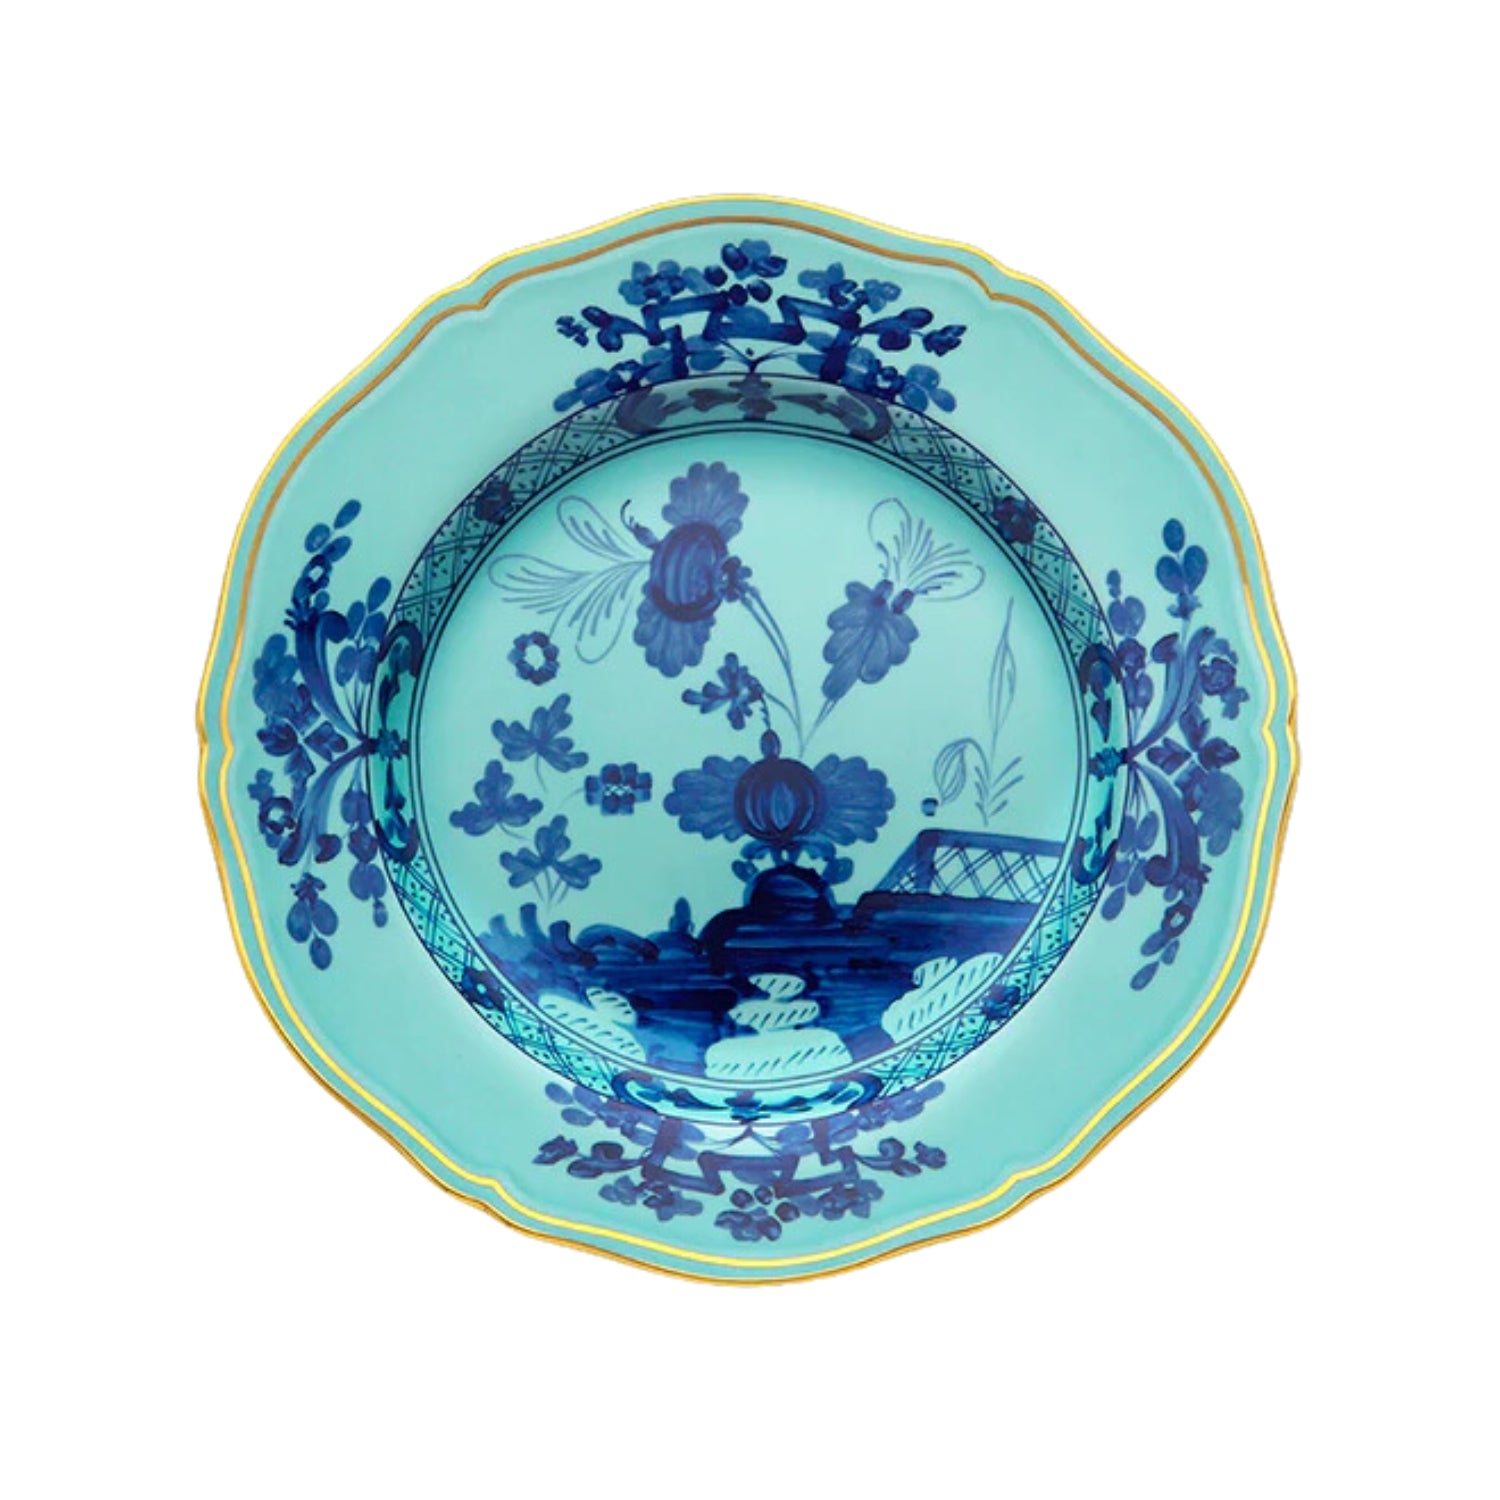 Ginori 1735 Oriente Italiano Dessert Plate, 21 cm